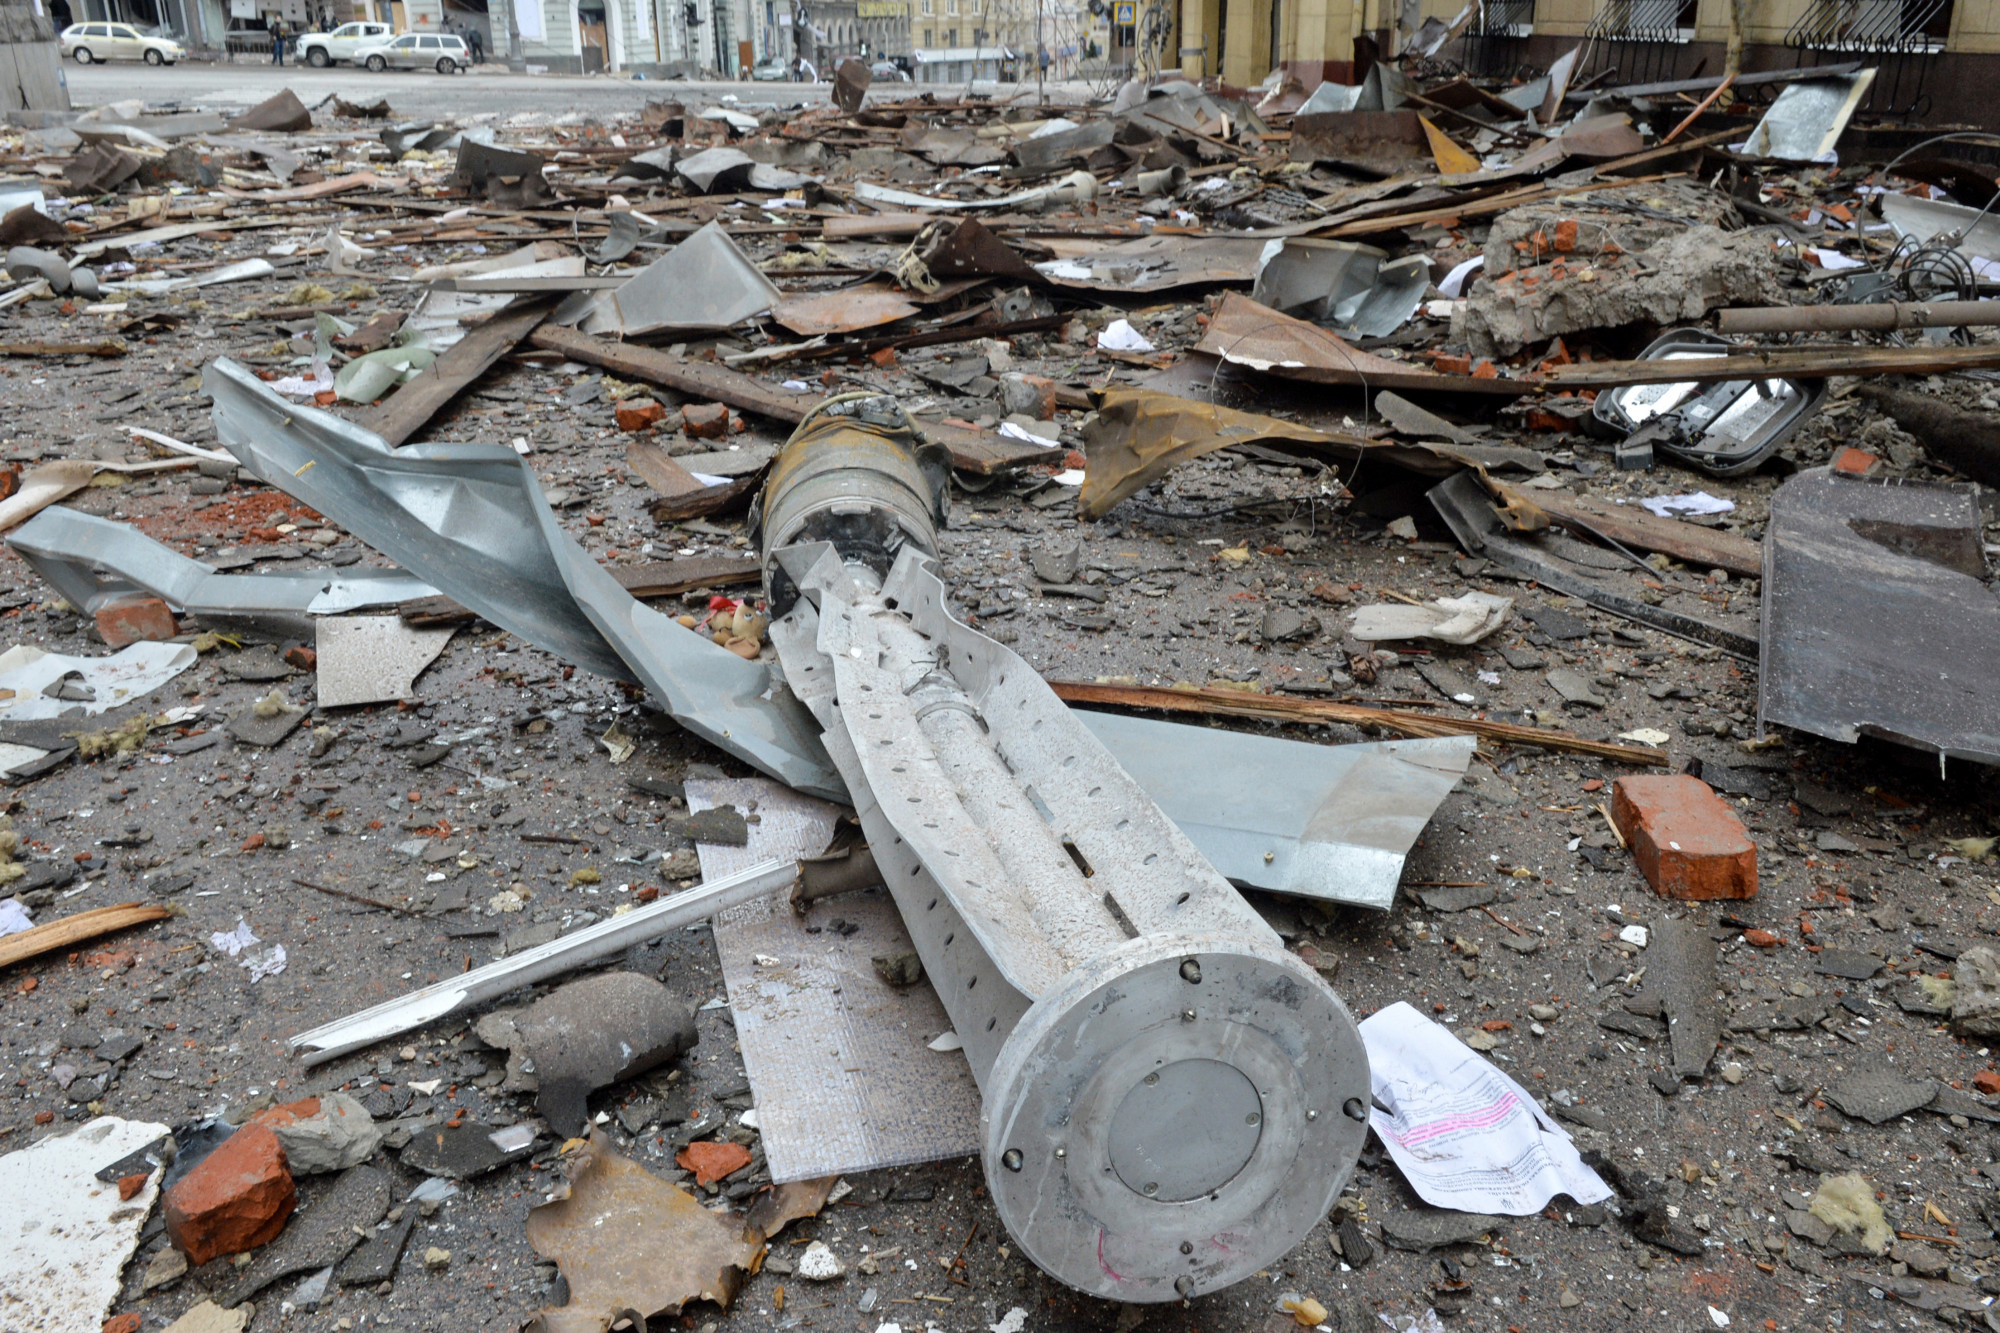 Vaktában kilőtt, válogatás nélkül pusztító orosz lőszerek a háborús fényképeken